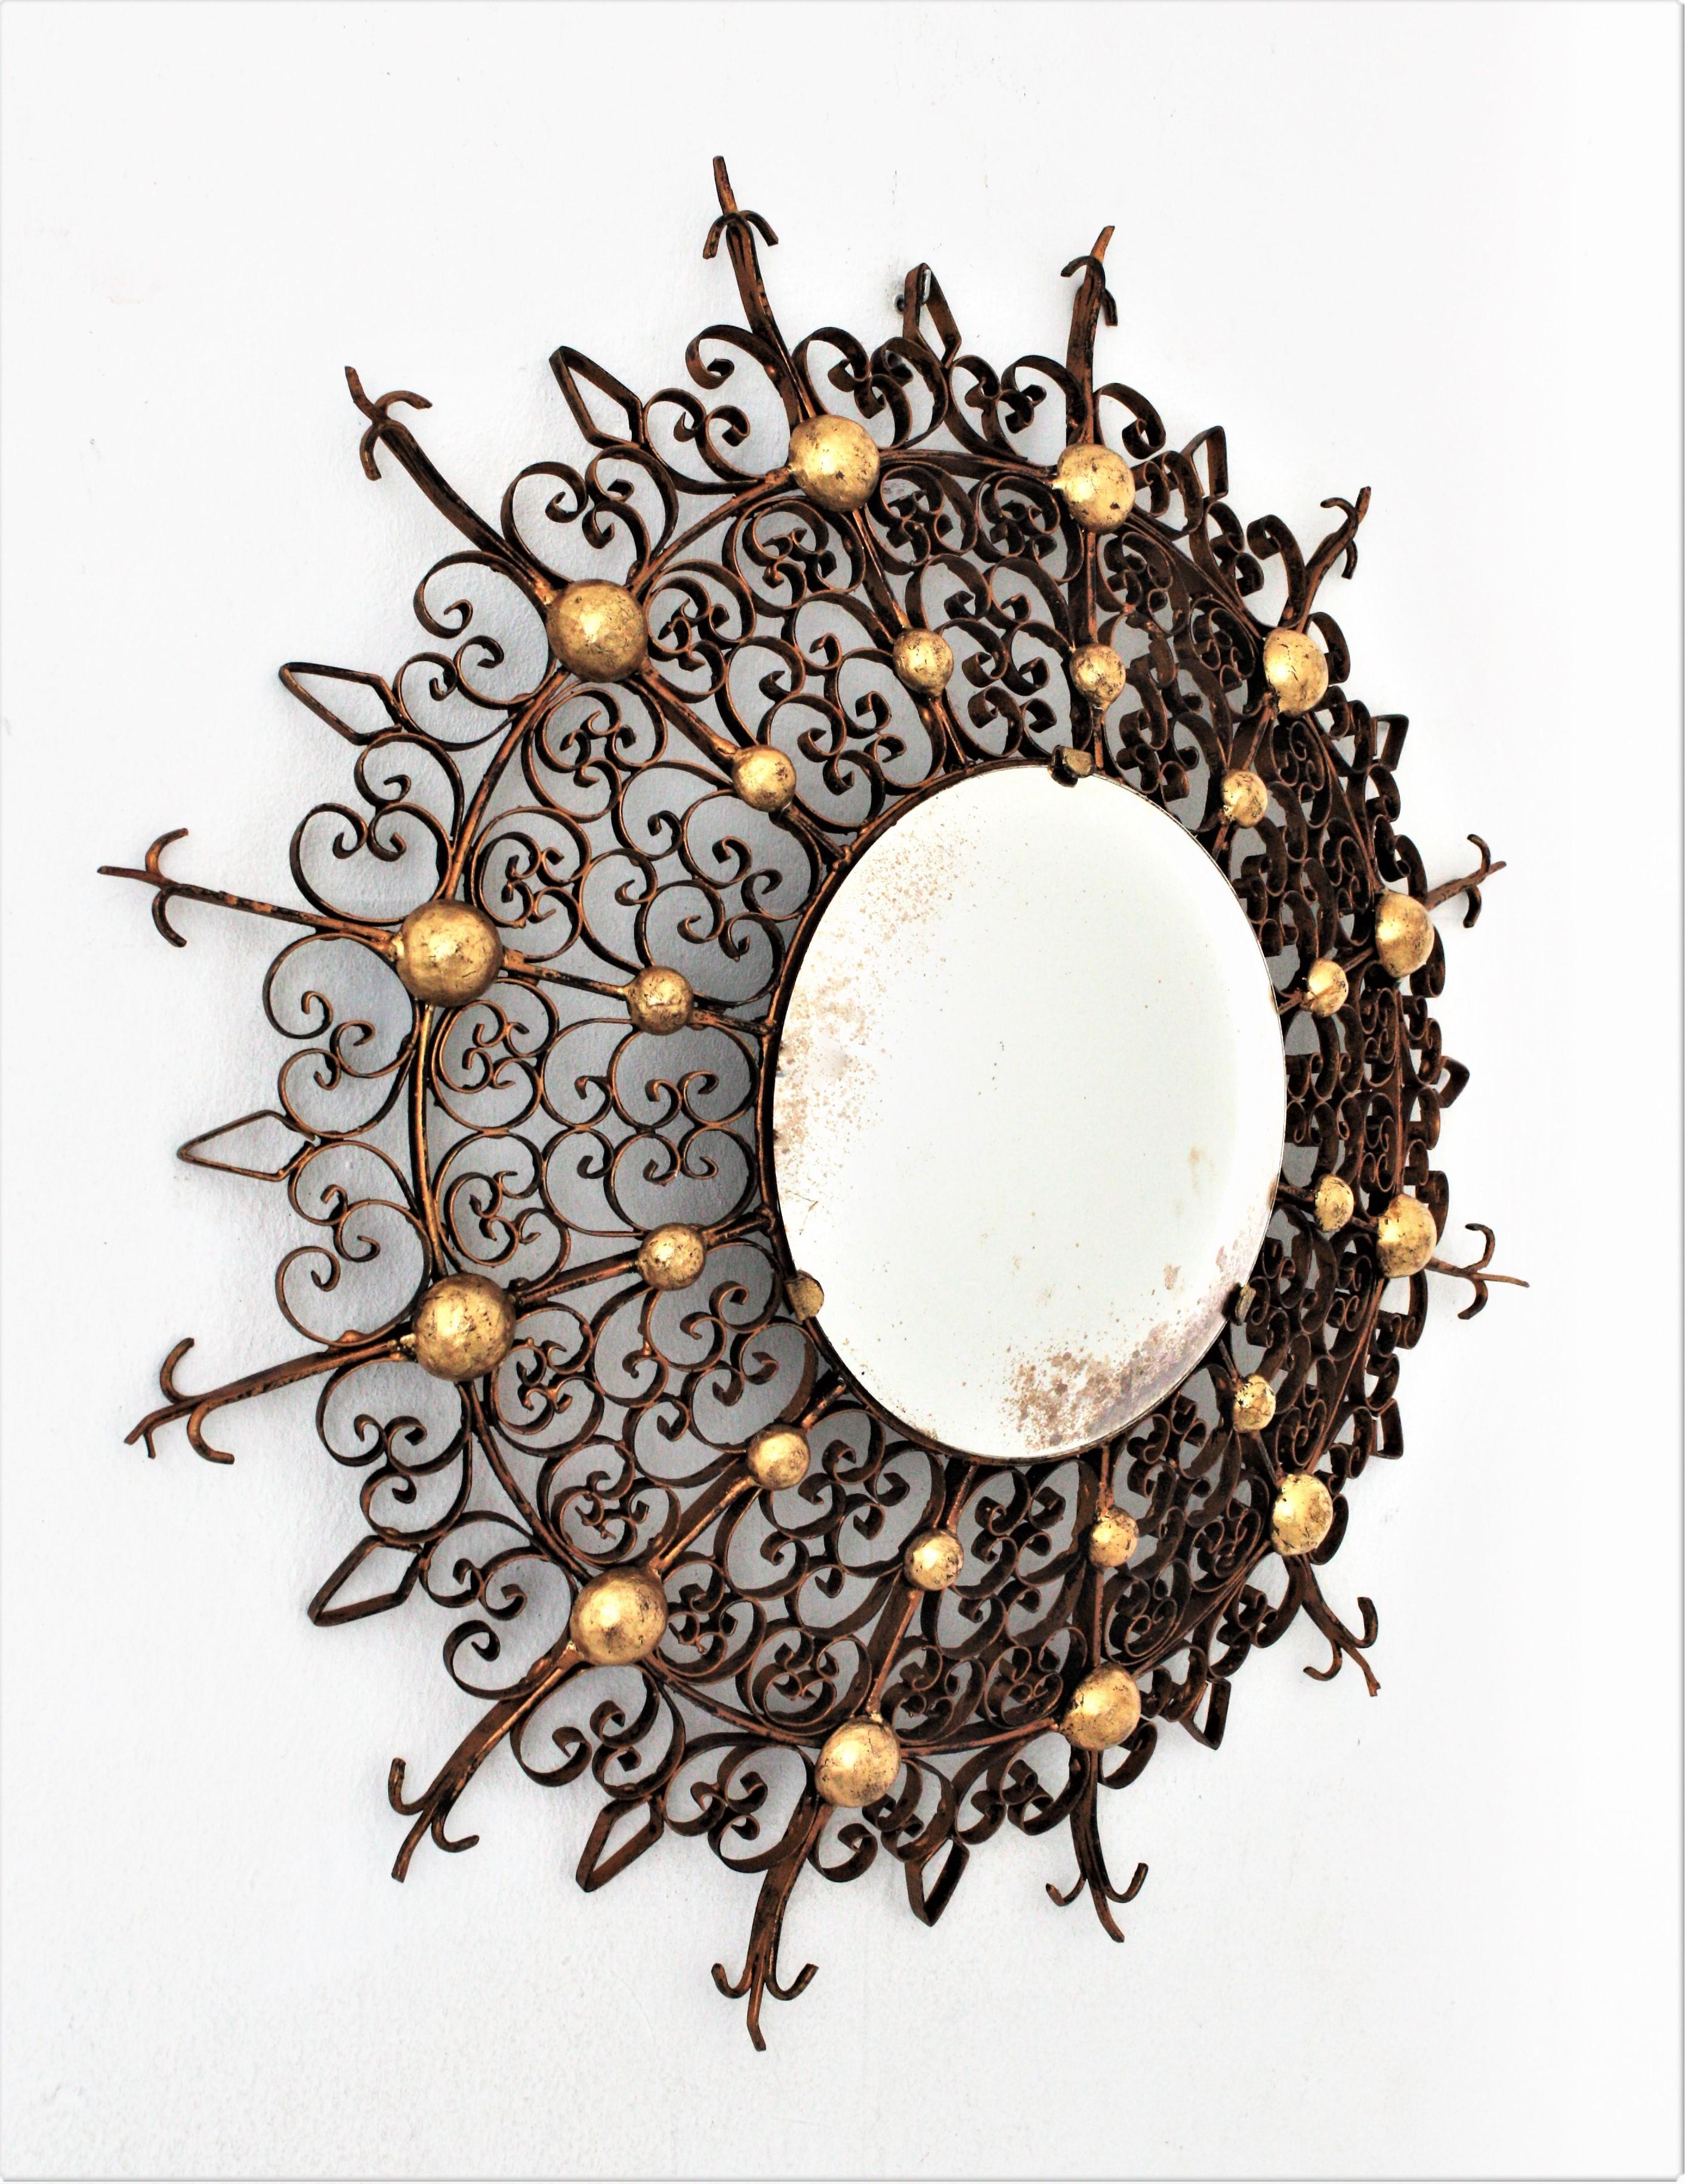 Impressionnant miroir convexe en fer doré, de style néo-gothique, avec un cadre à volutes et des accents dorés. France, années 1930-1940.
Le cadre est un décor filigrané complexe avec des volutes de différentes tailles accentuées par des